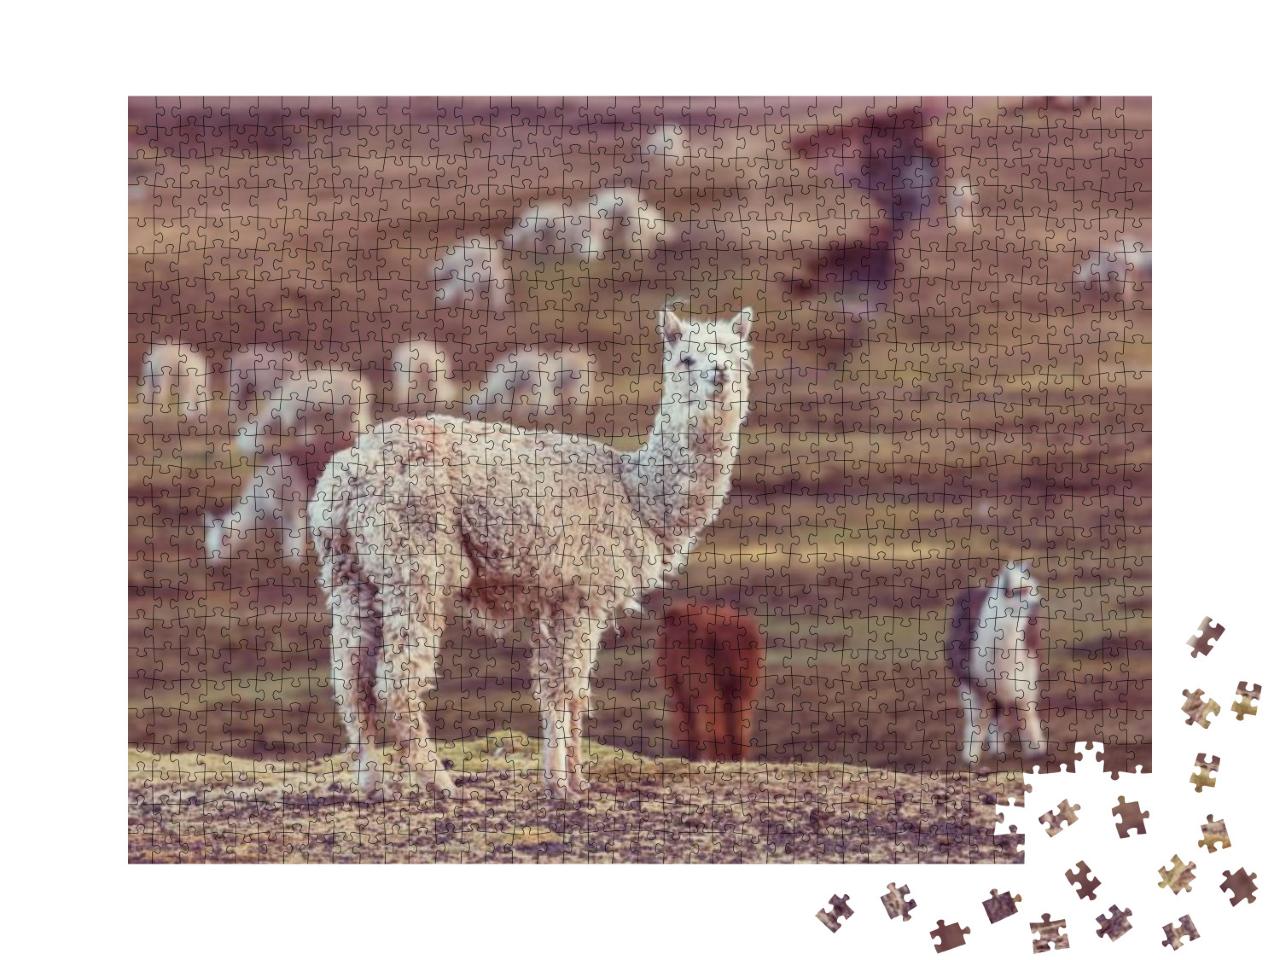 Puzzle 1000 Teile „Ein Peruanisches Alpaka, Anden“